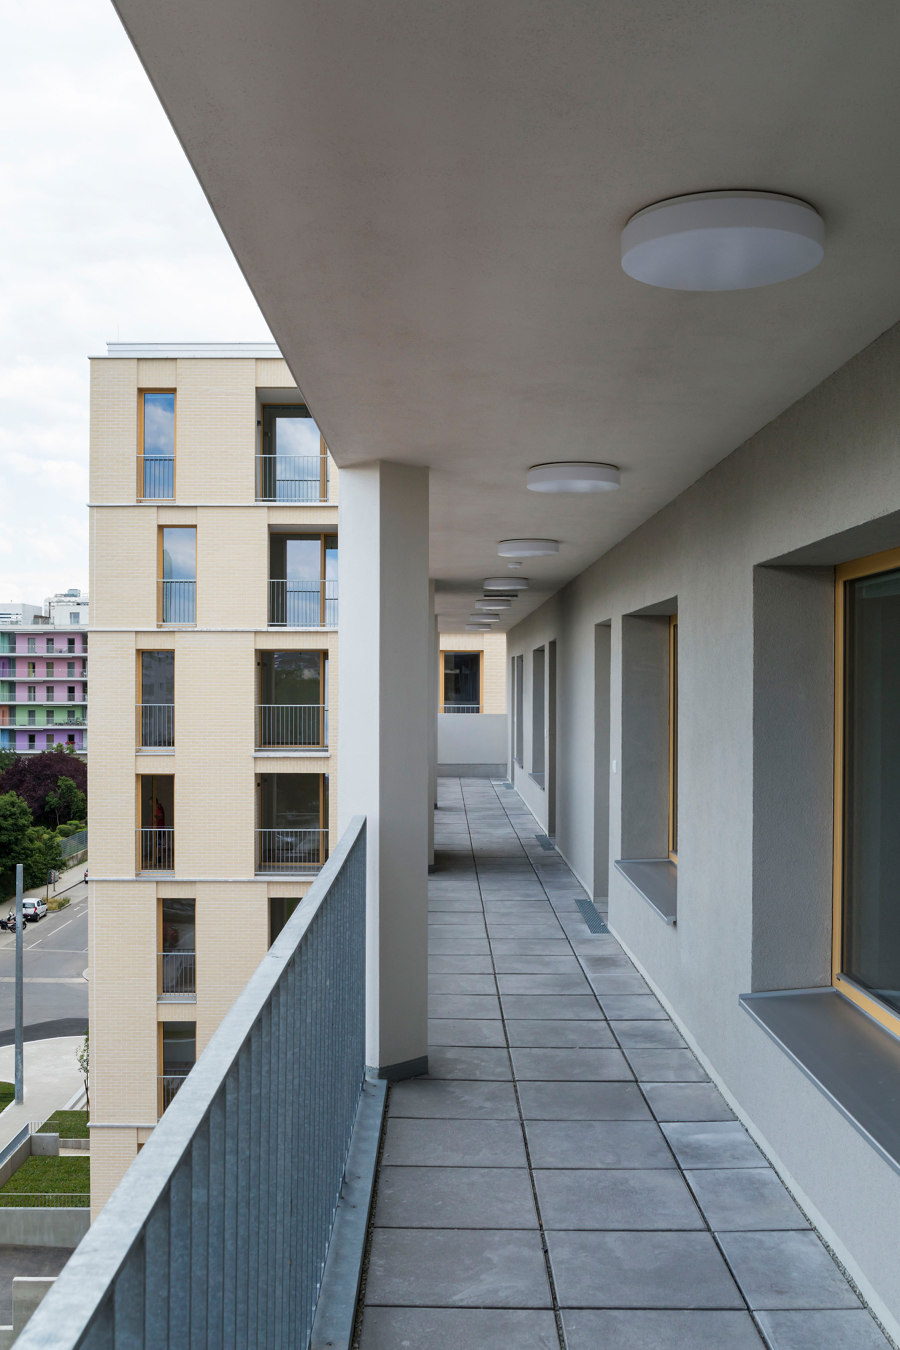 Residential Complex VORGARTENSTRASSE 98-106 von BEHF Architects | Mehrfamilienhäuser